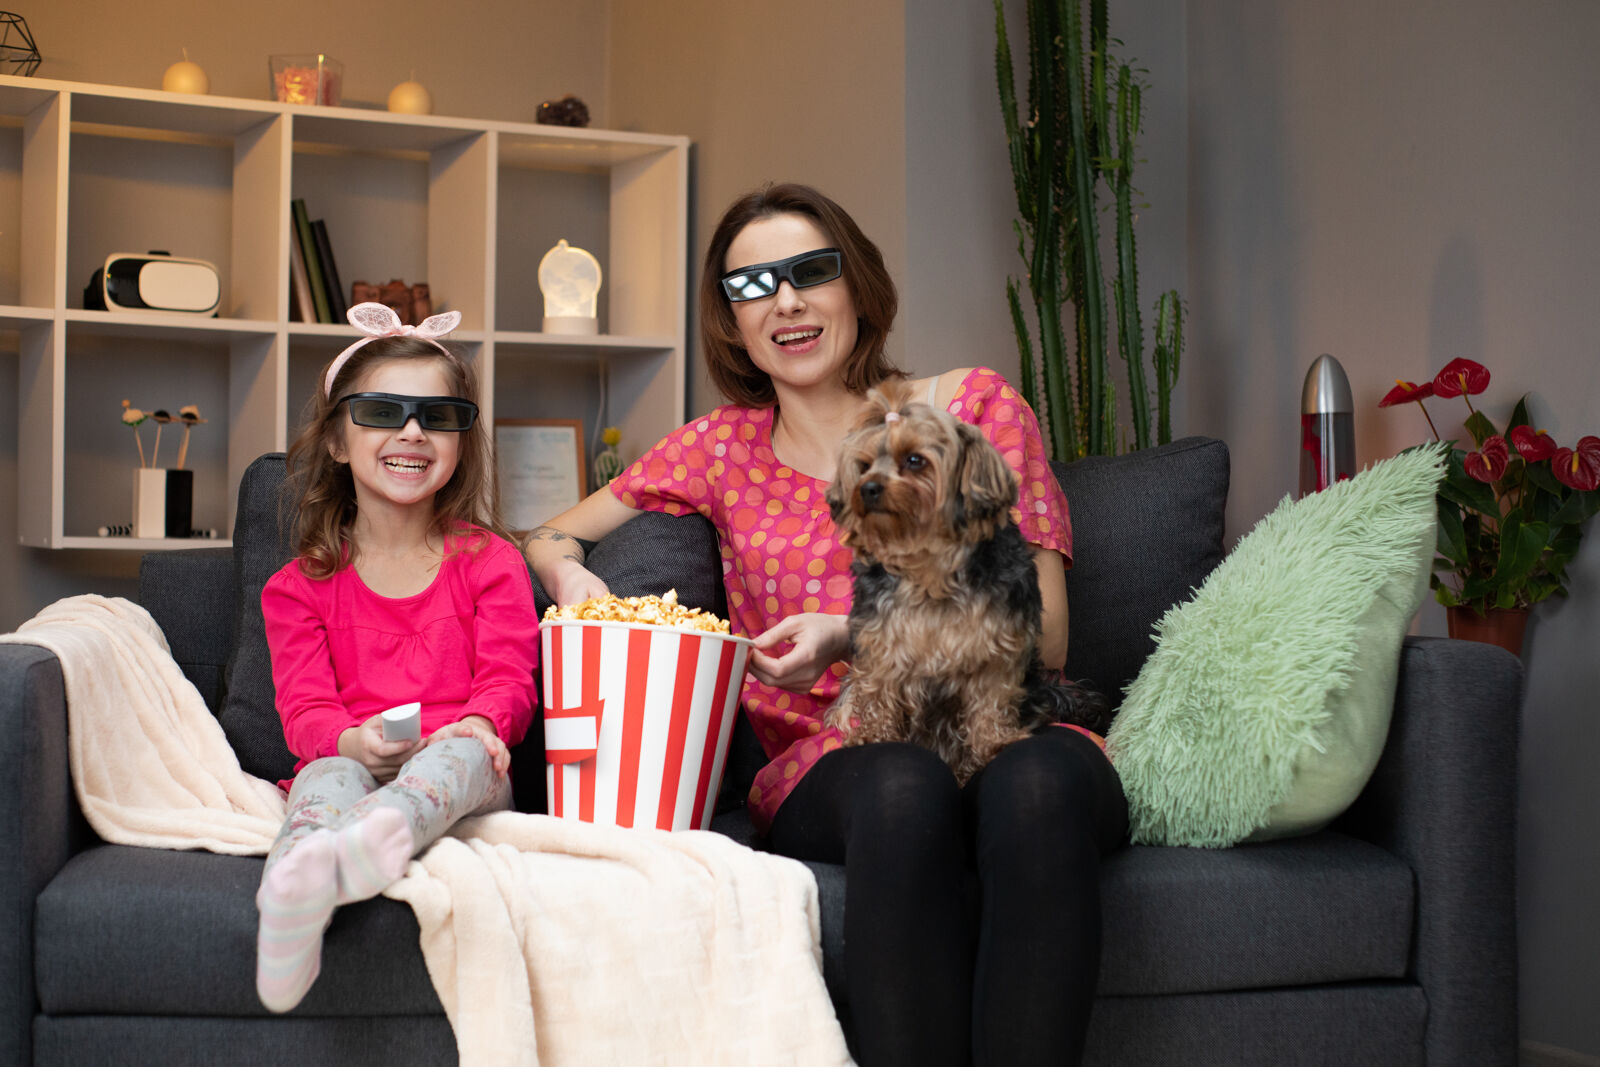 Mama z psem na kolanach i córką obok w okularach 3D oglądają film jedząc popcorn.